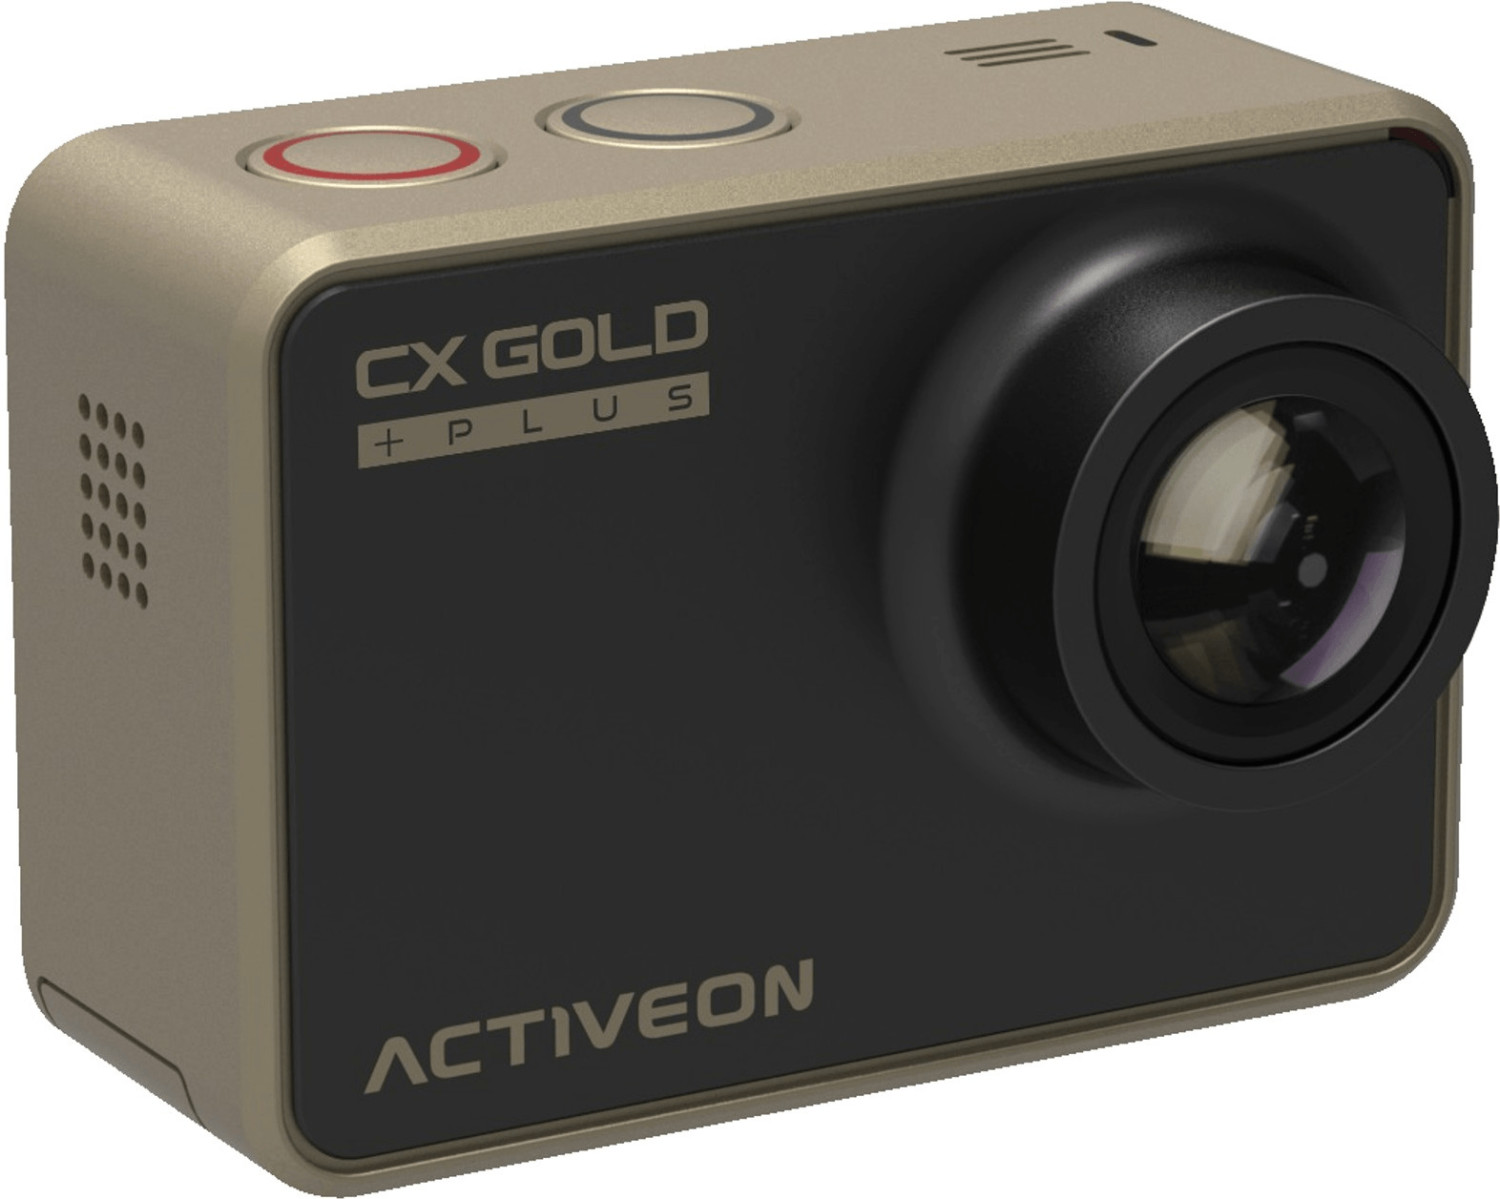 Activeon CX Gold Plus